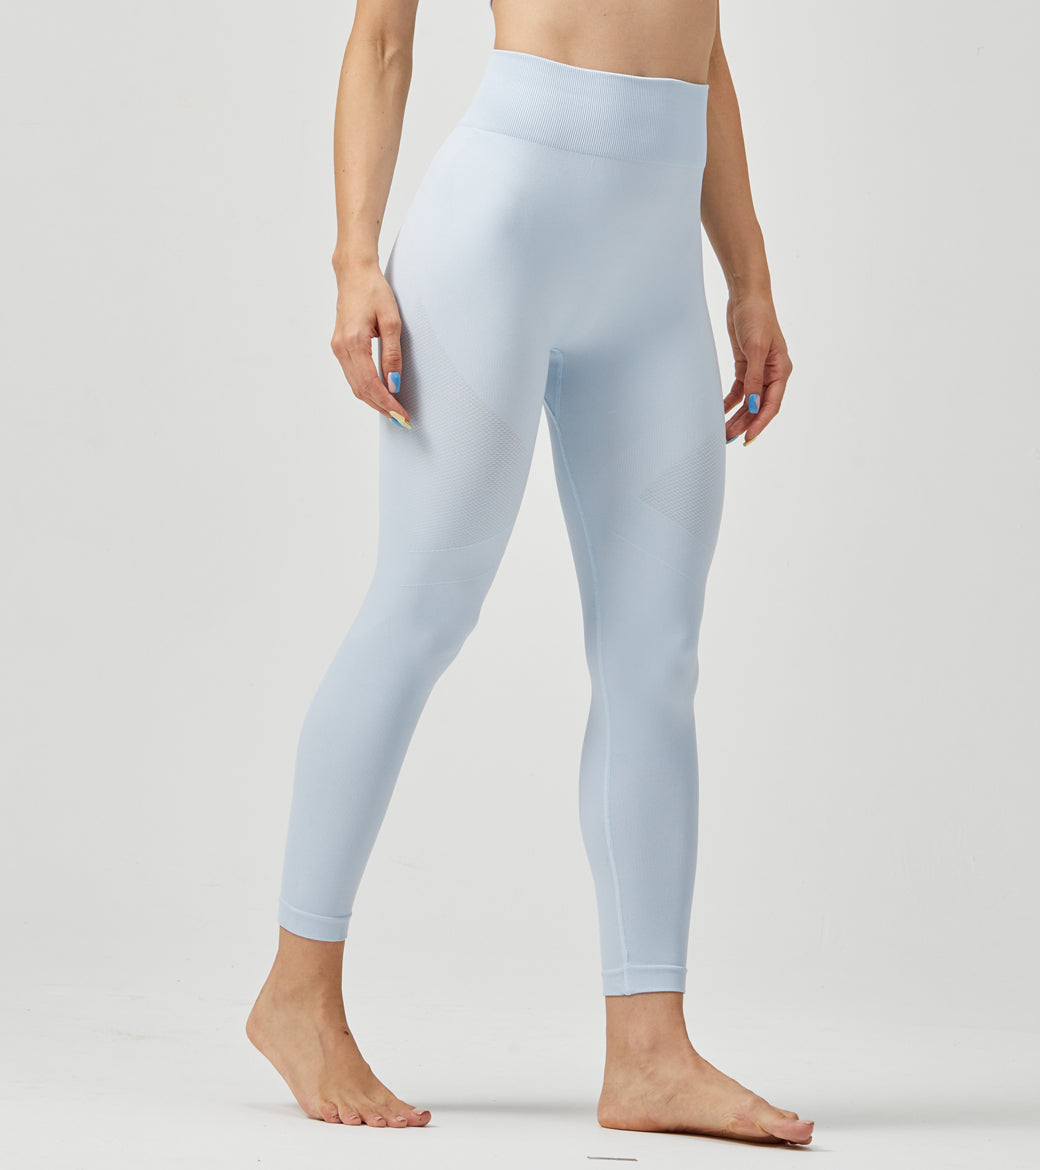 LOVESOFT Light Blue Seamless Leggings for Women Yoga Workout Tight Pants